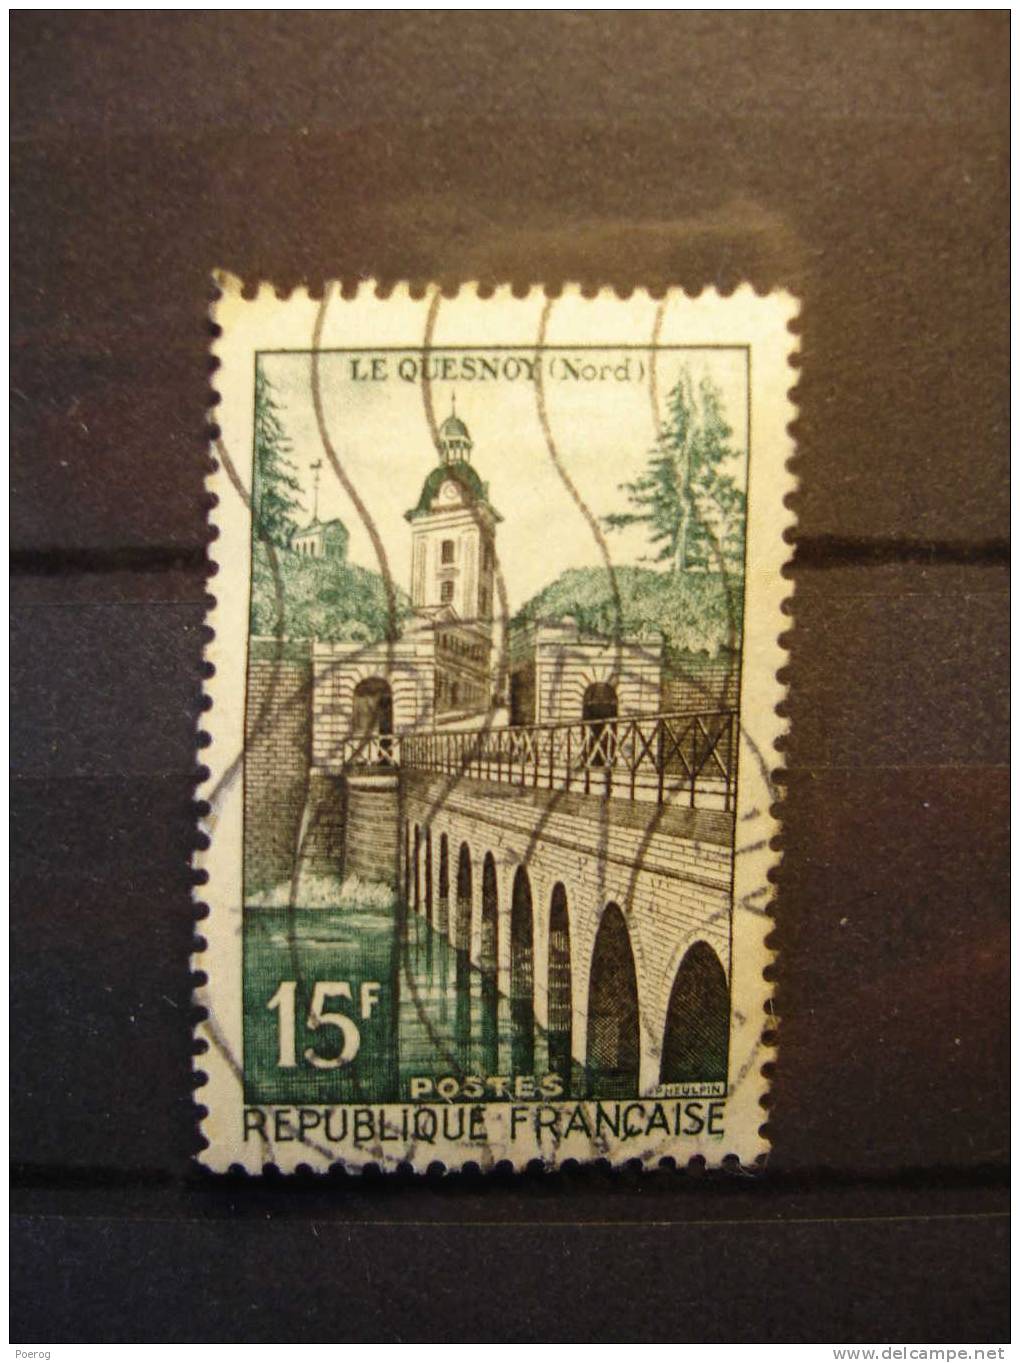 FRANCE - TIMBRE OBLITERE - LE QUESNOY (NORD) - 15F - USED - 1160 - Pont Bridge - Oblitérés